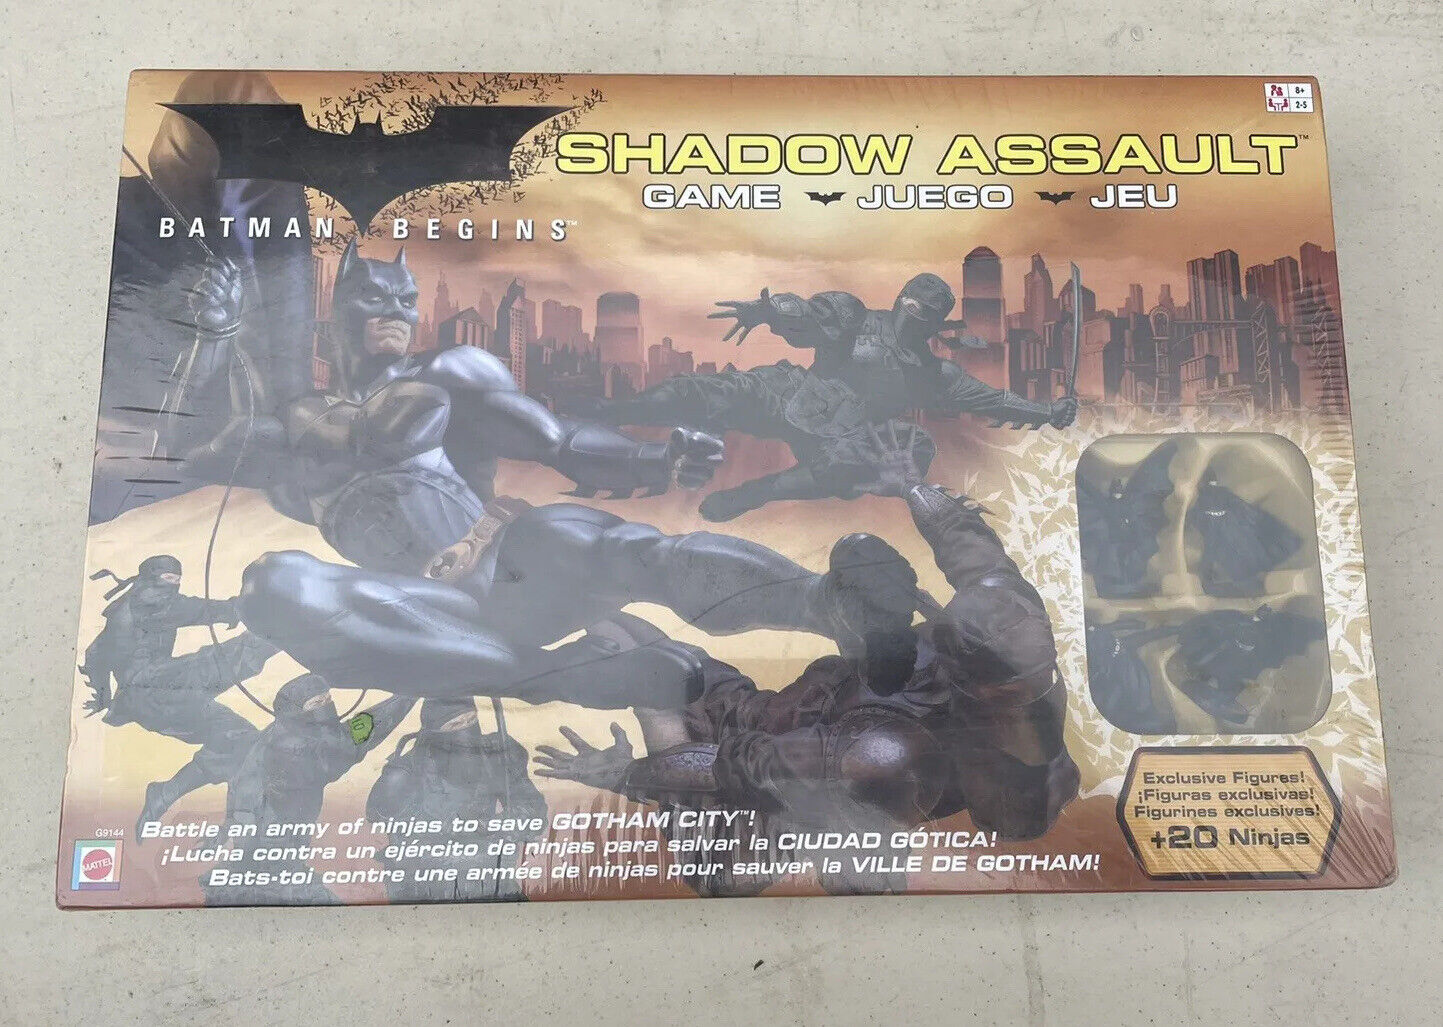 BATMAN BEGINS SHADOW ASSAULT GAME  MATTEL 2005  BOXED